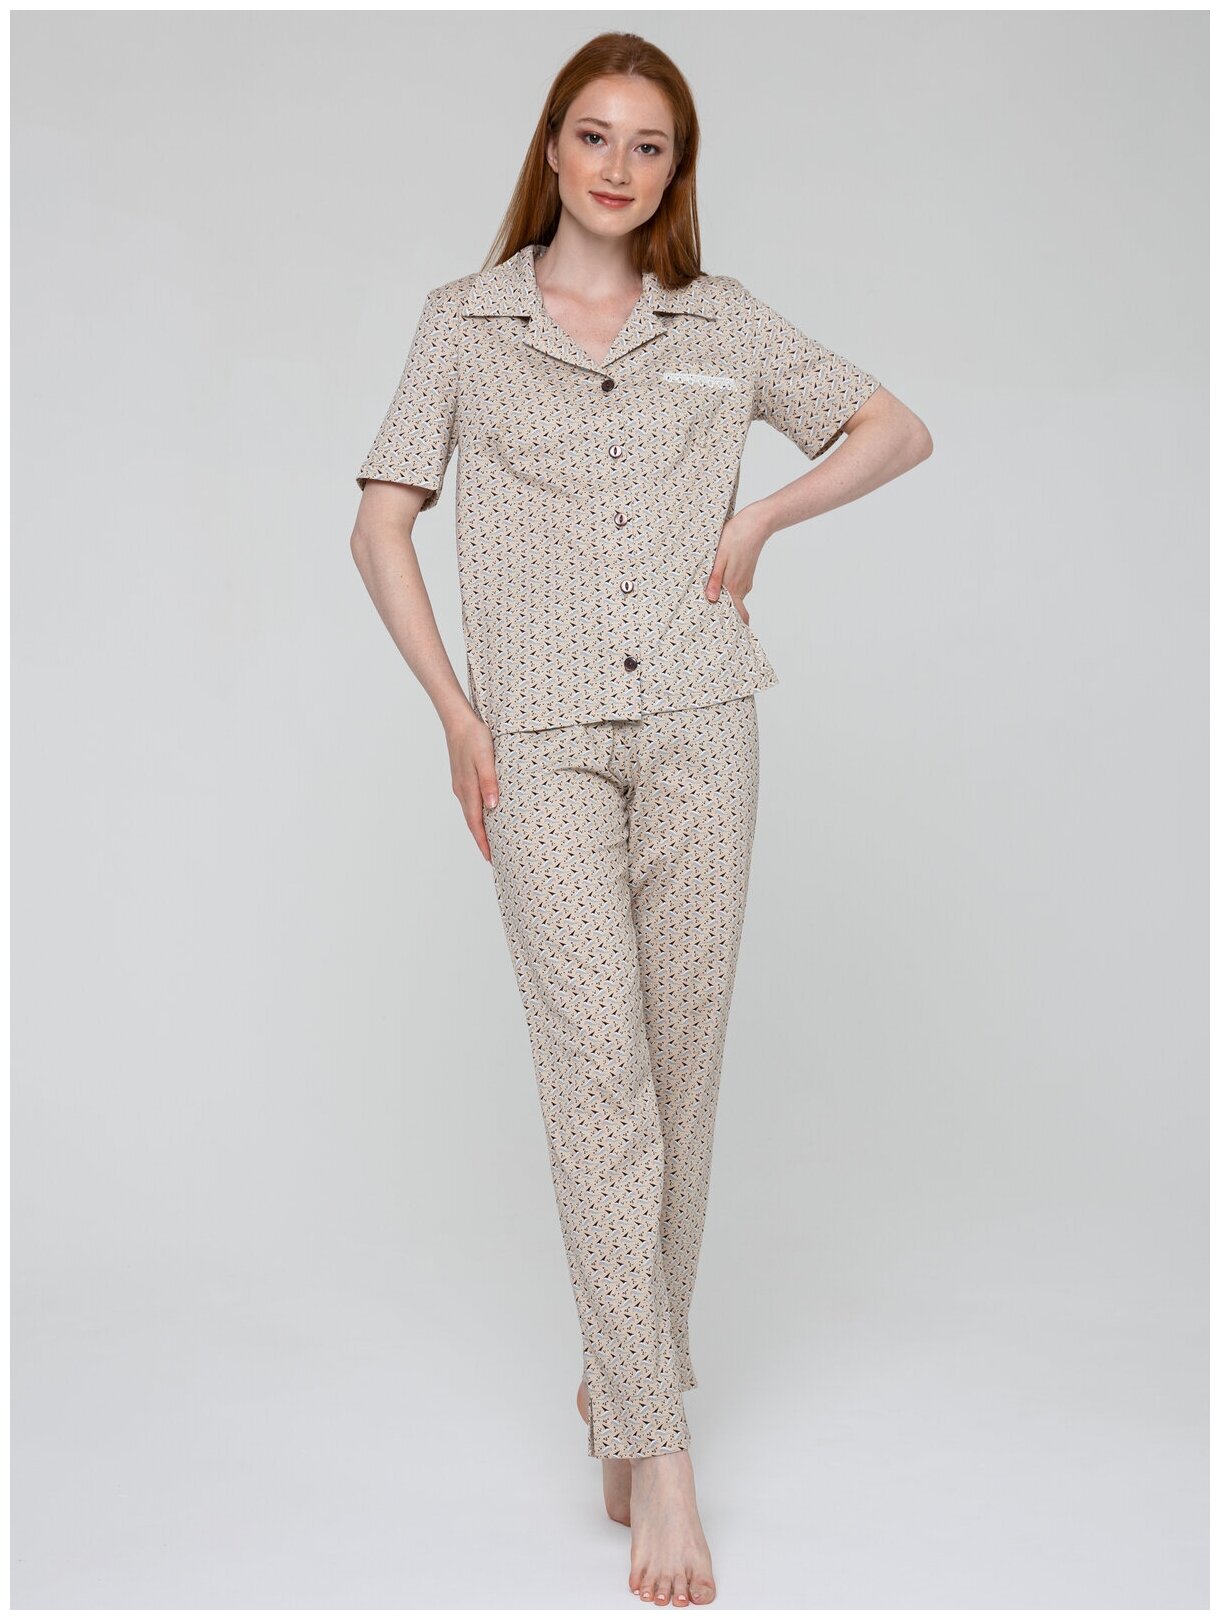 Пижамы домашняя женская Алтекс рубашка со штанами бежевая, размер 56 - фотография № 1